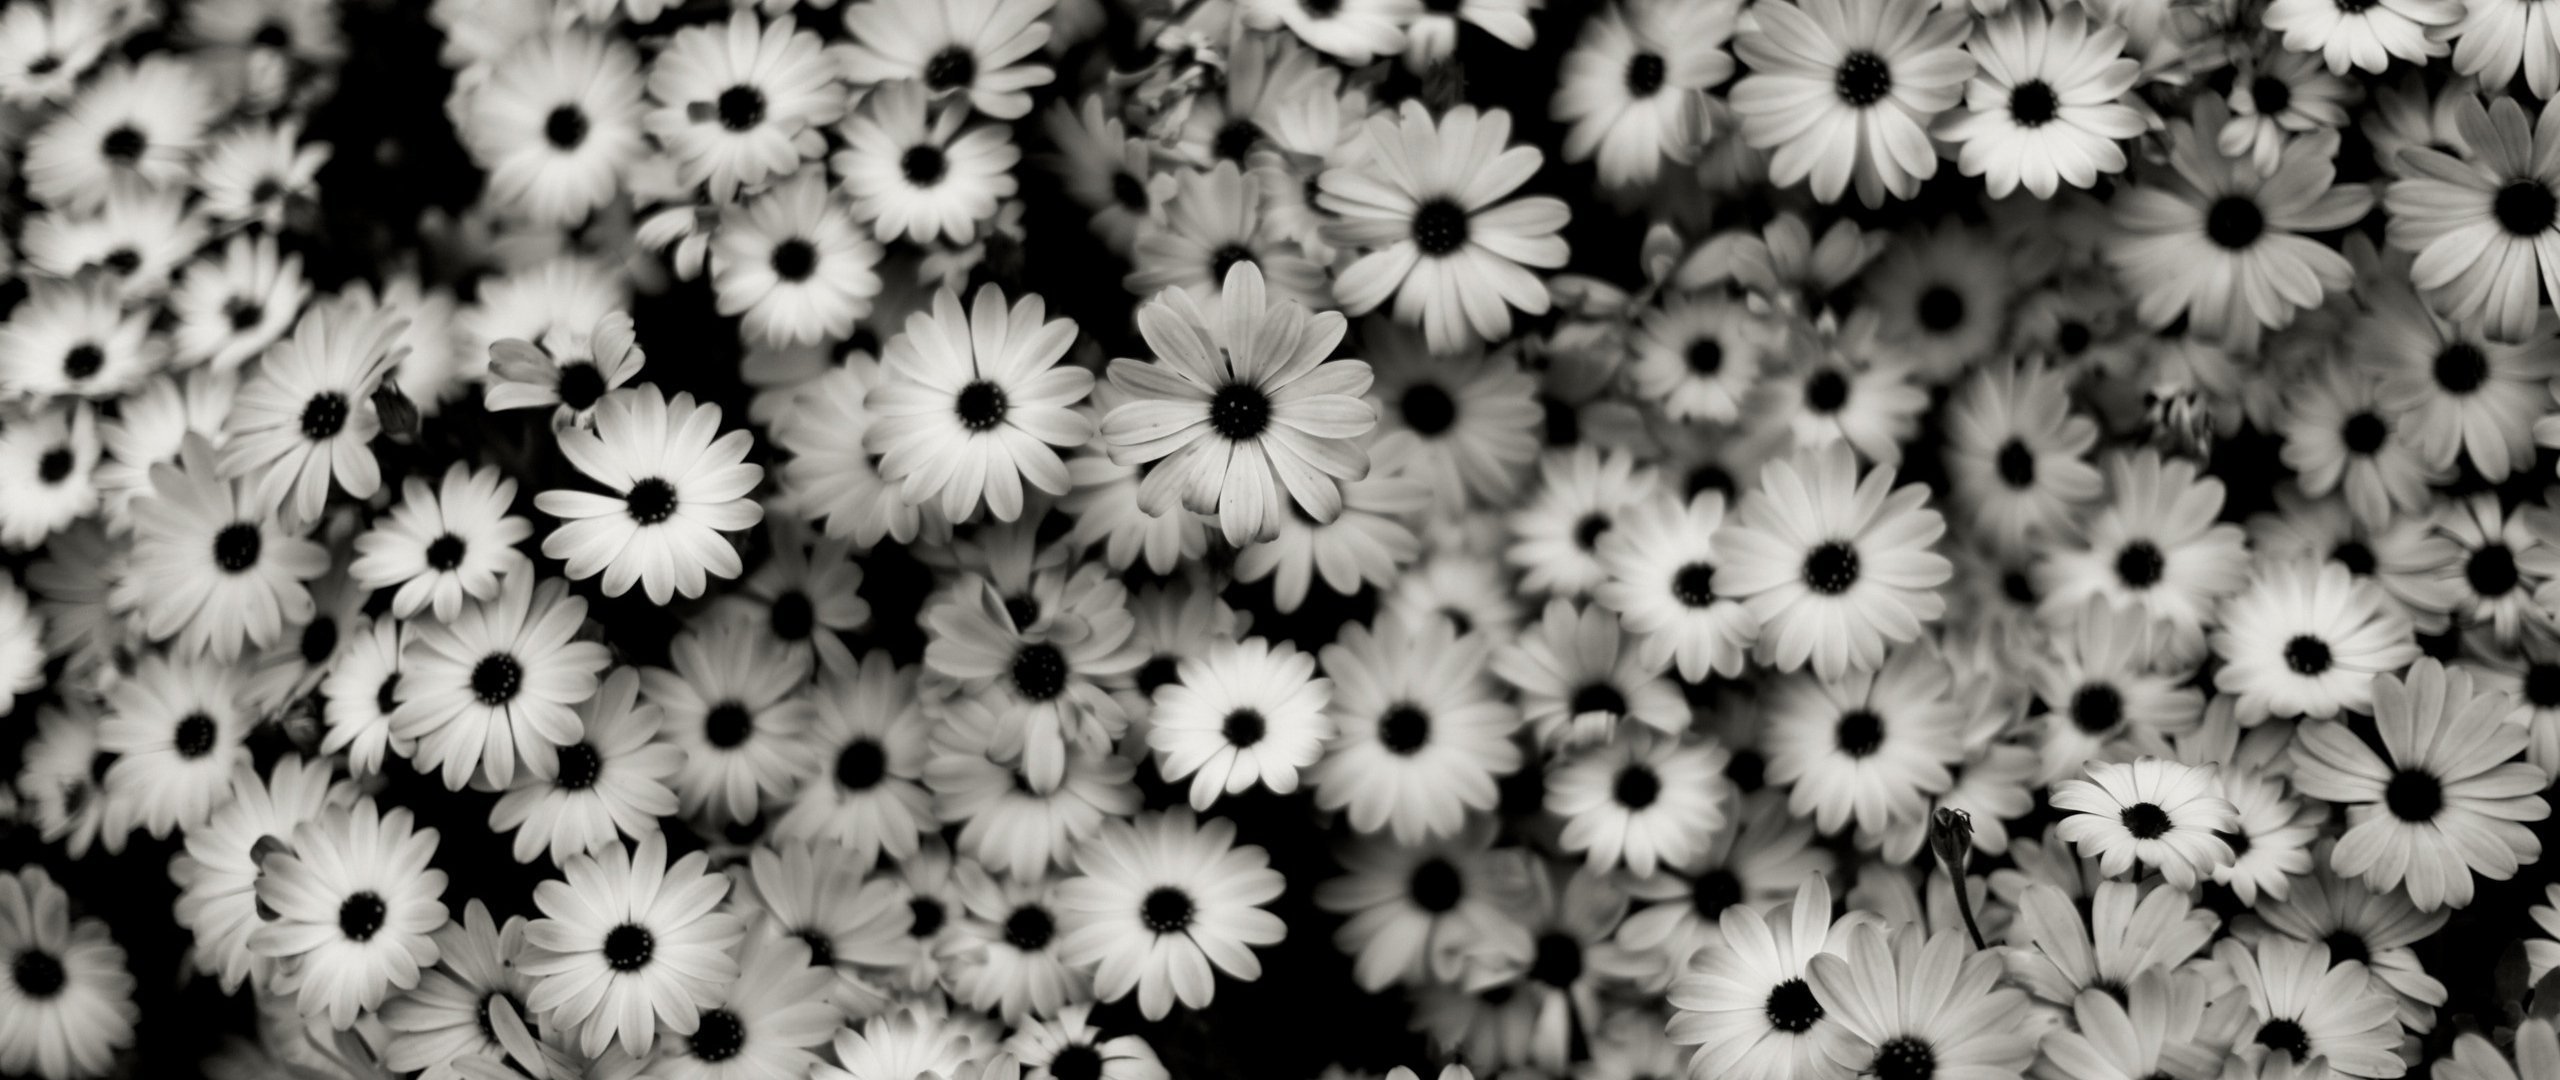 Картинки для обложки. Черно белое. Красивые цветы. Ромашки. Черно белые обои.